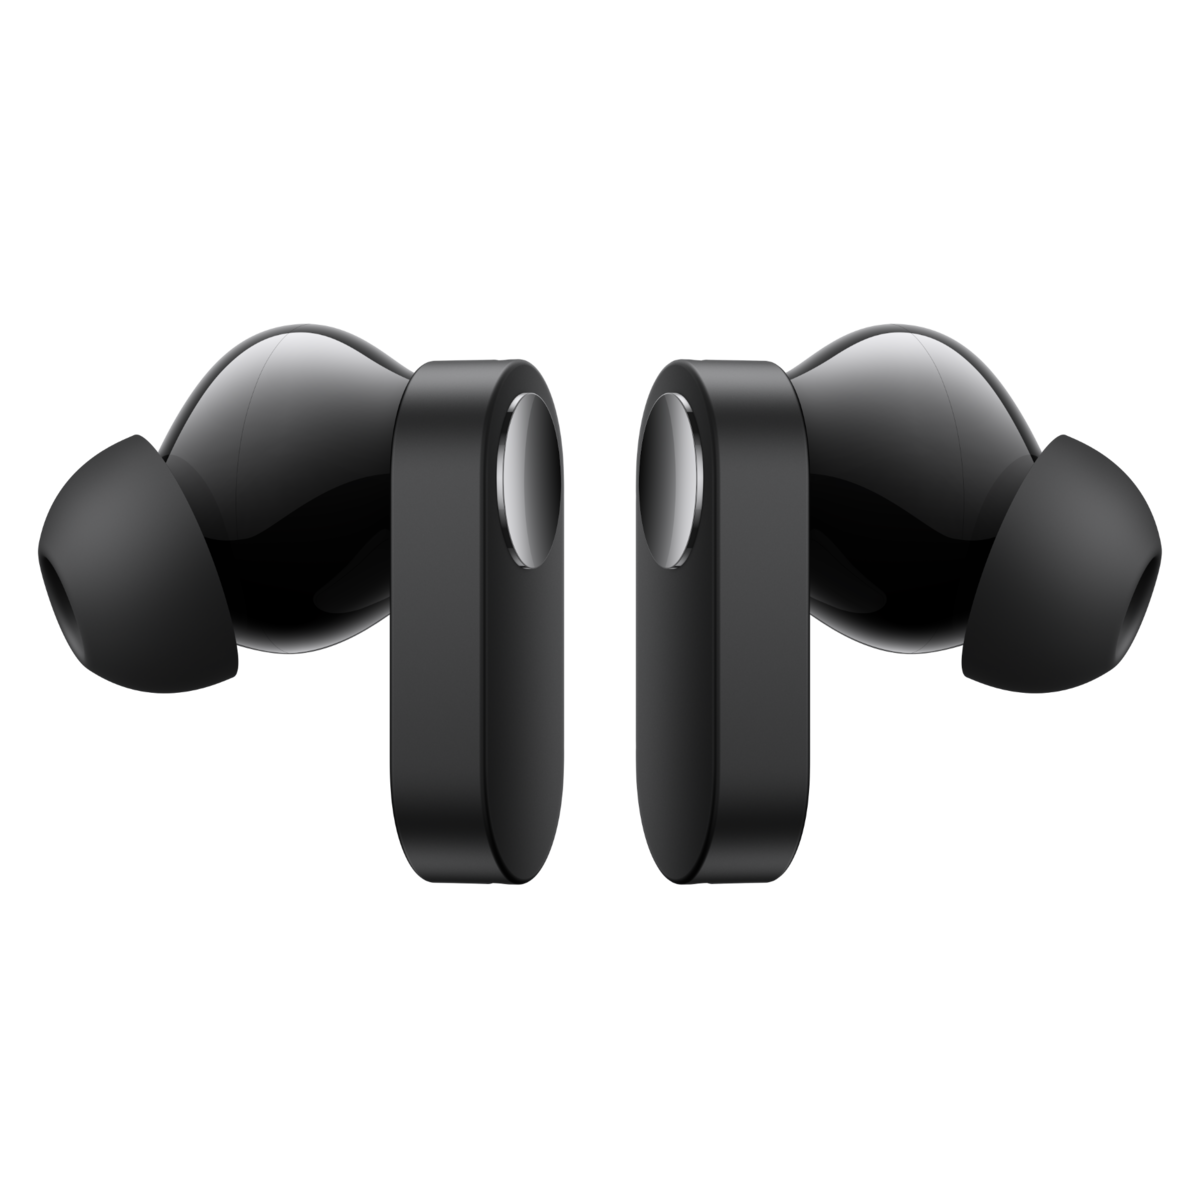 Unos auriculares de OnePlus tirados de precio: autonomía de 30 horas y Dolby  Atmos por menos de 30 euros